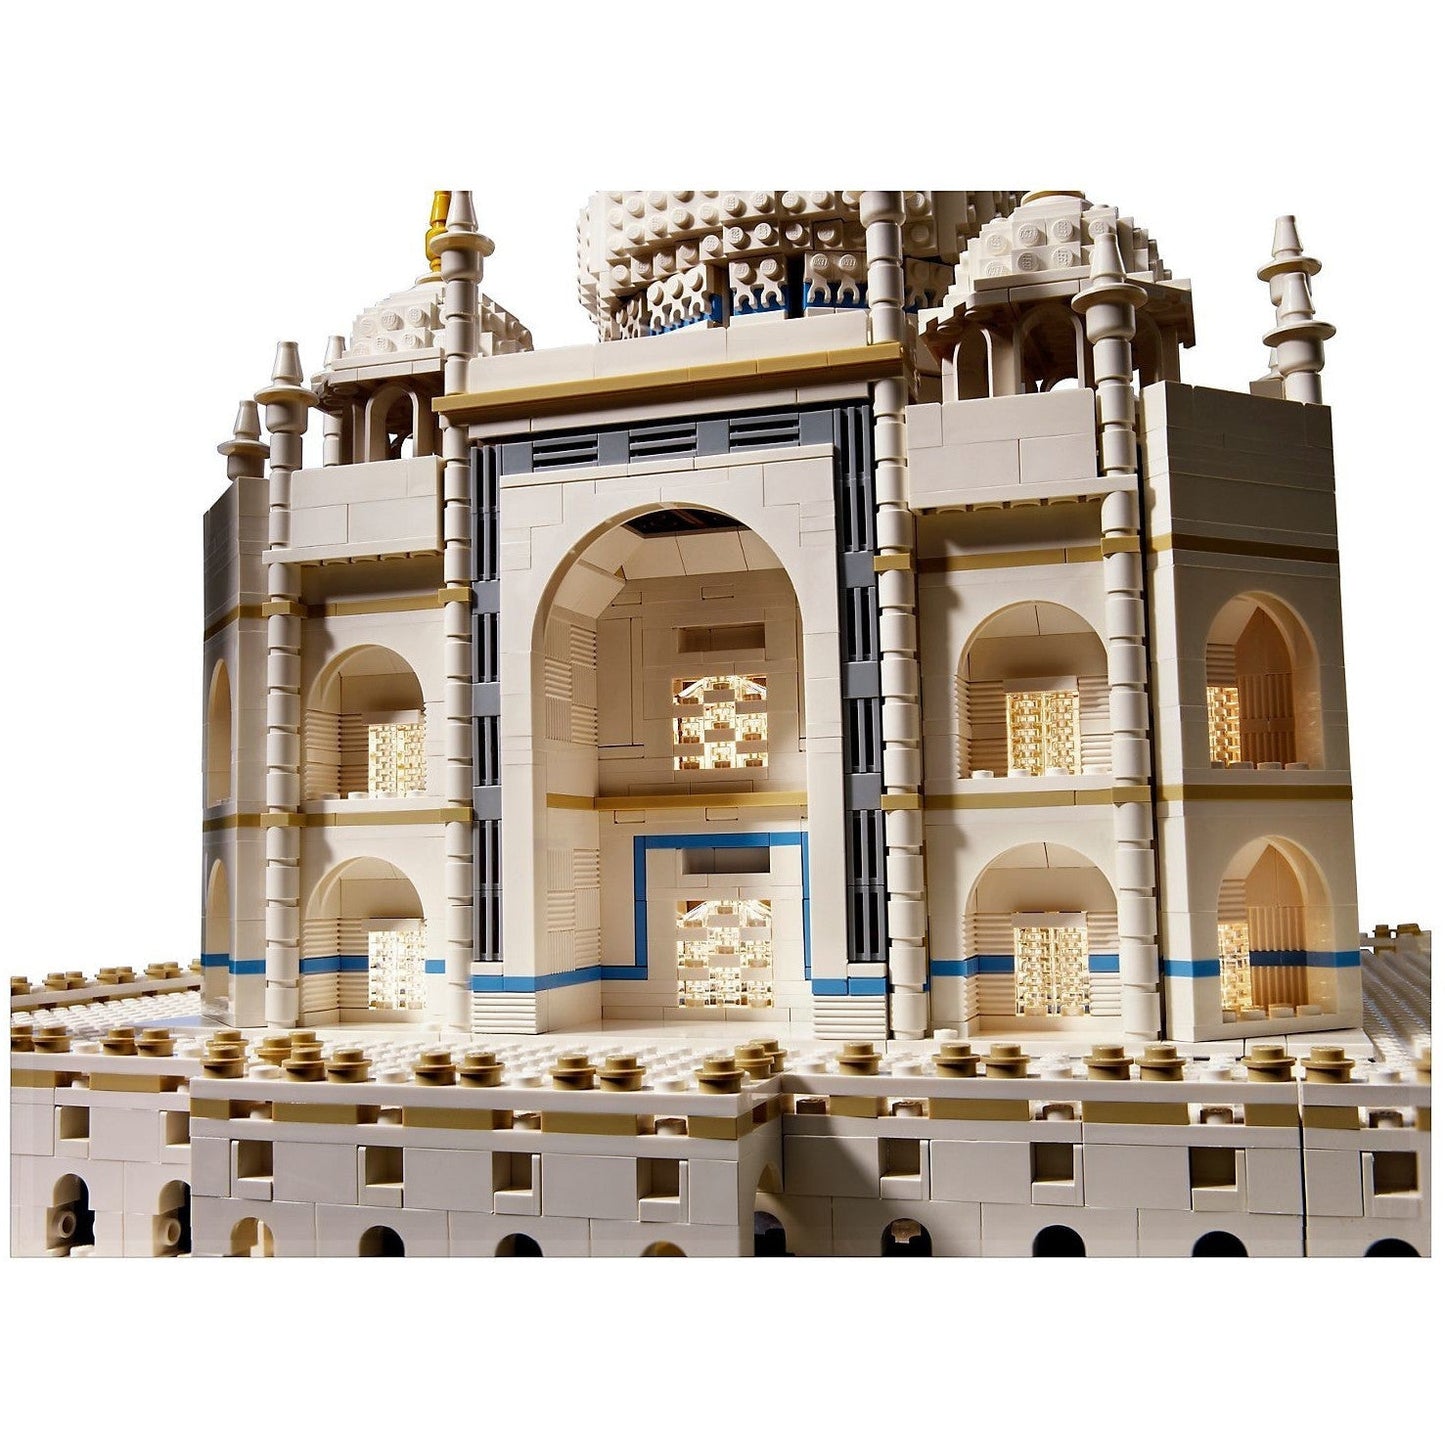 LEGO 10256 Creator Expert Taj Mahal